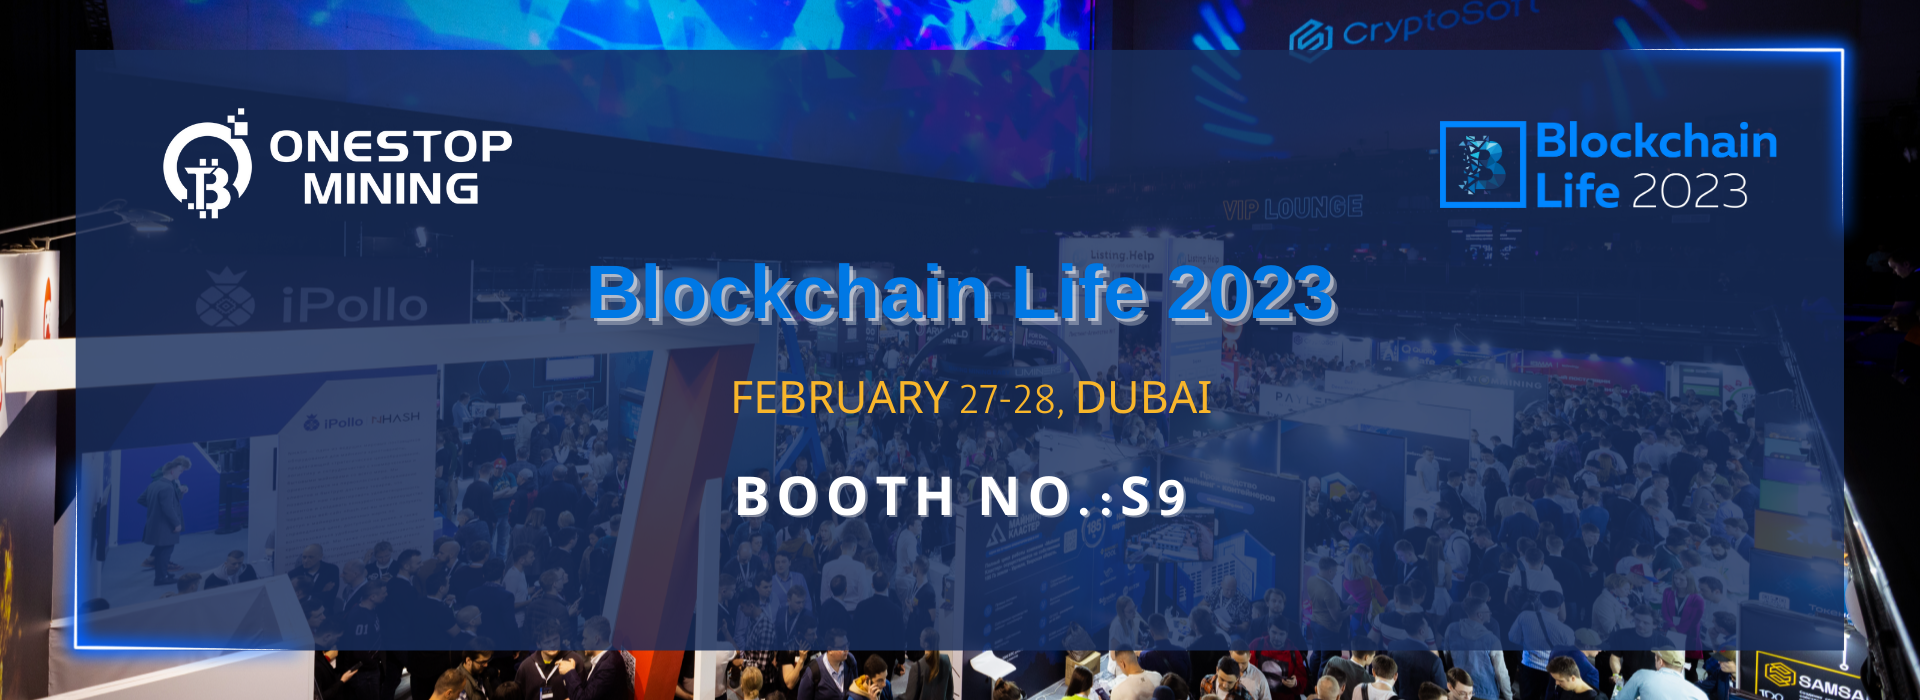 OnestopMining participará da Blockchain Life 2023 em Dubai